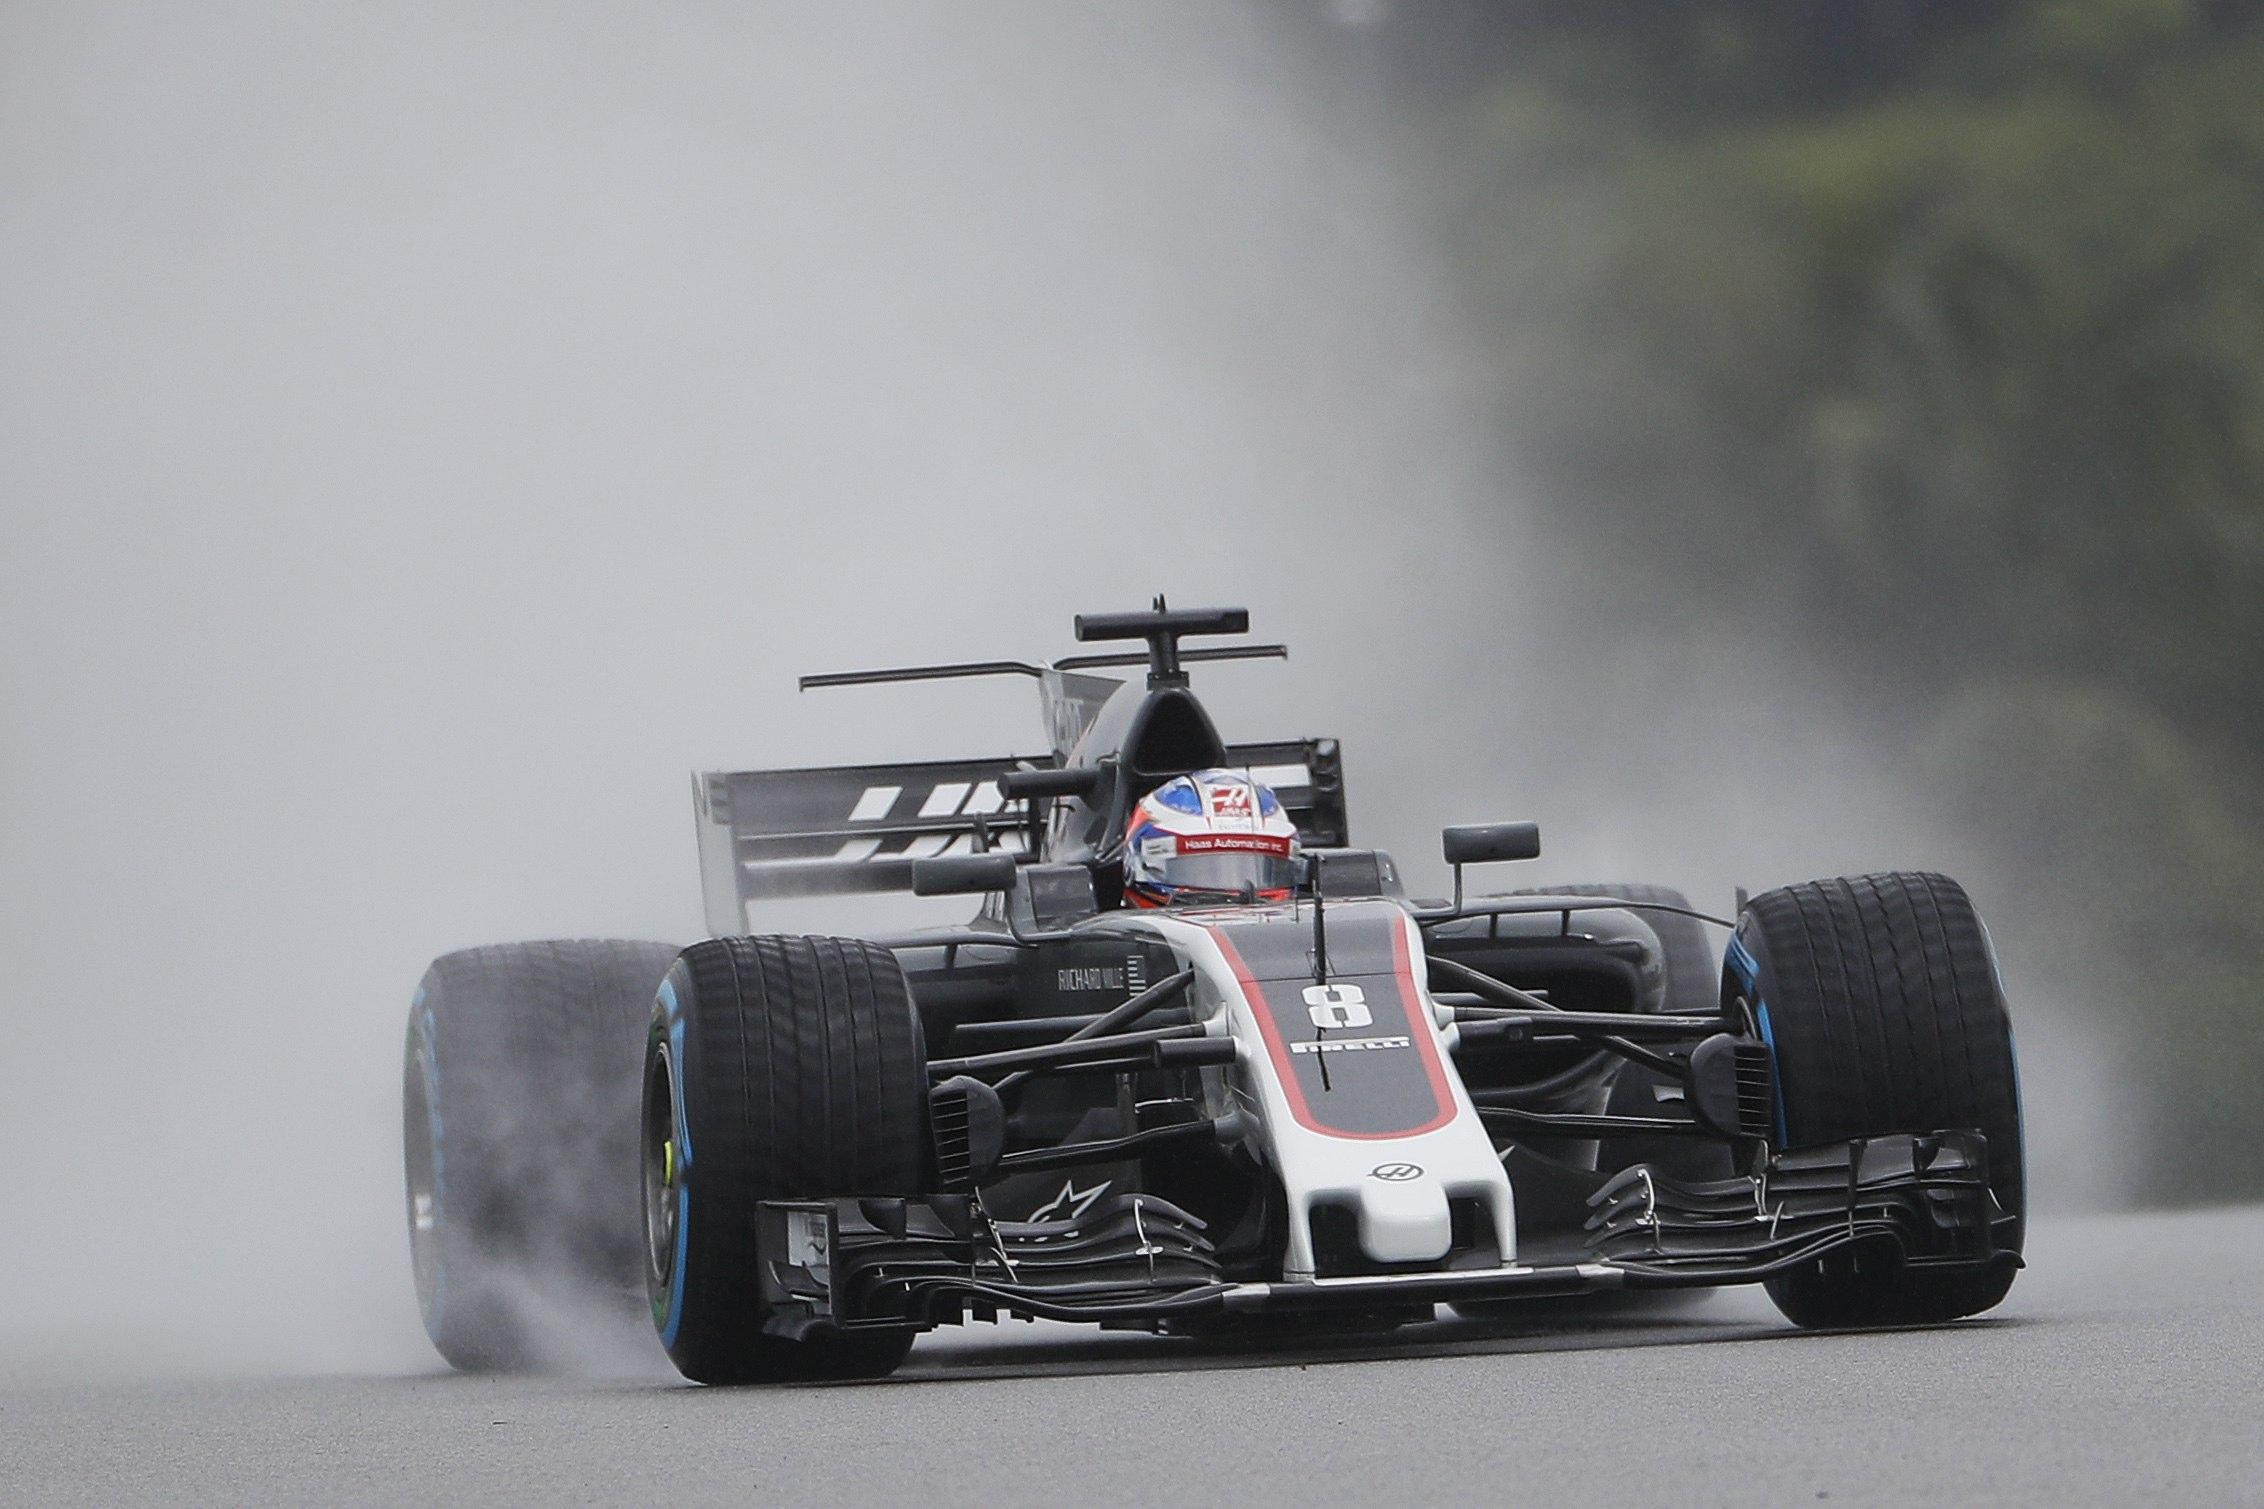 Tanta sfortuna oggi per Romain Grosjean. Il pilota della Haas è rimasto coinvolto in un incidente in seguito alla rottura di un tombino che ha forato lo pneumatico della sua monoposto. Le sue condizioni fortunatamente sono buone